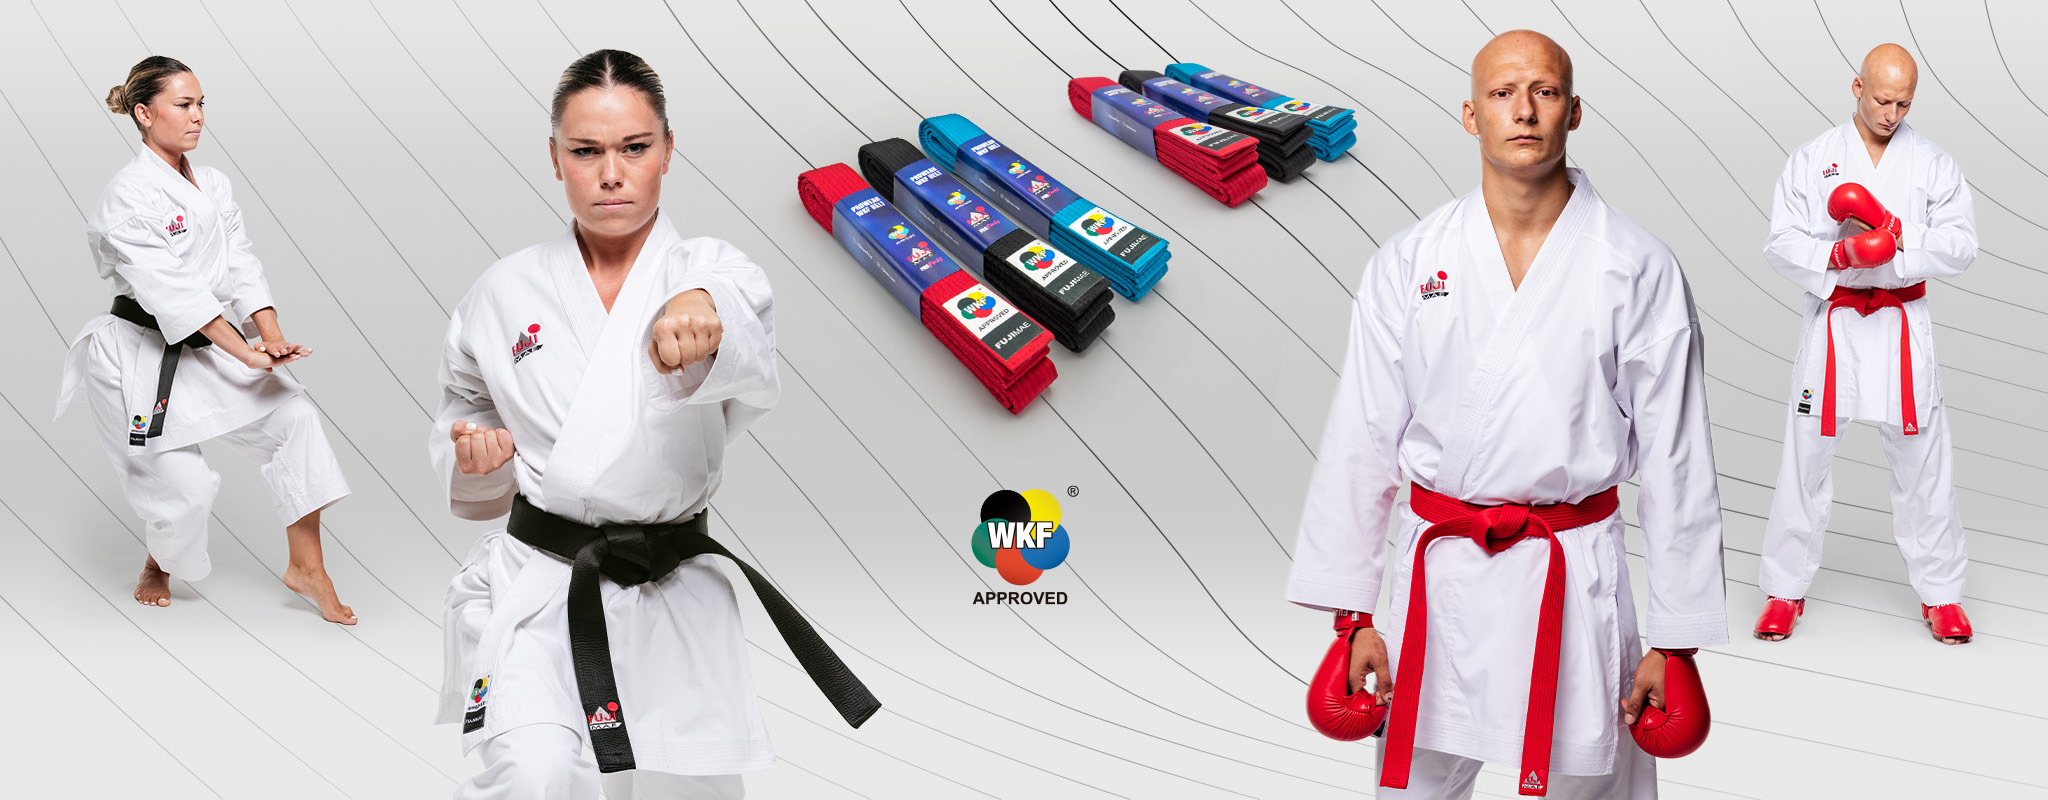 Tout votre équipement en sport de combat pour boxe, mma, judo, karaté (12)  - Timersport Shop